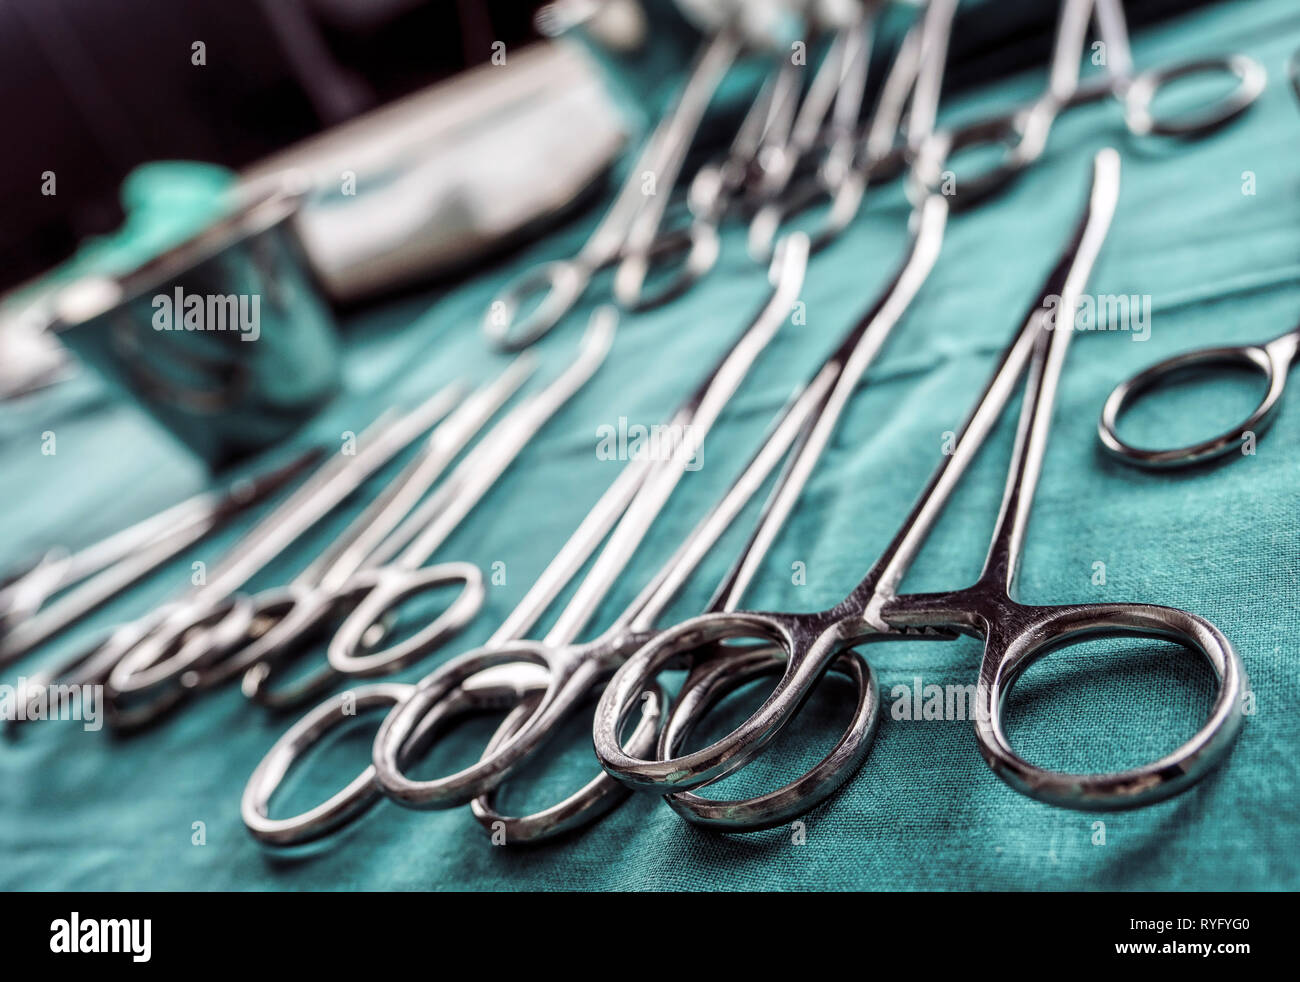 Einige scheren für Chirurgie in einem Operationssaal, konzeptionelle Bild, horizontale Zusammensetzung Stockfoto